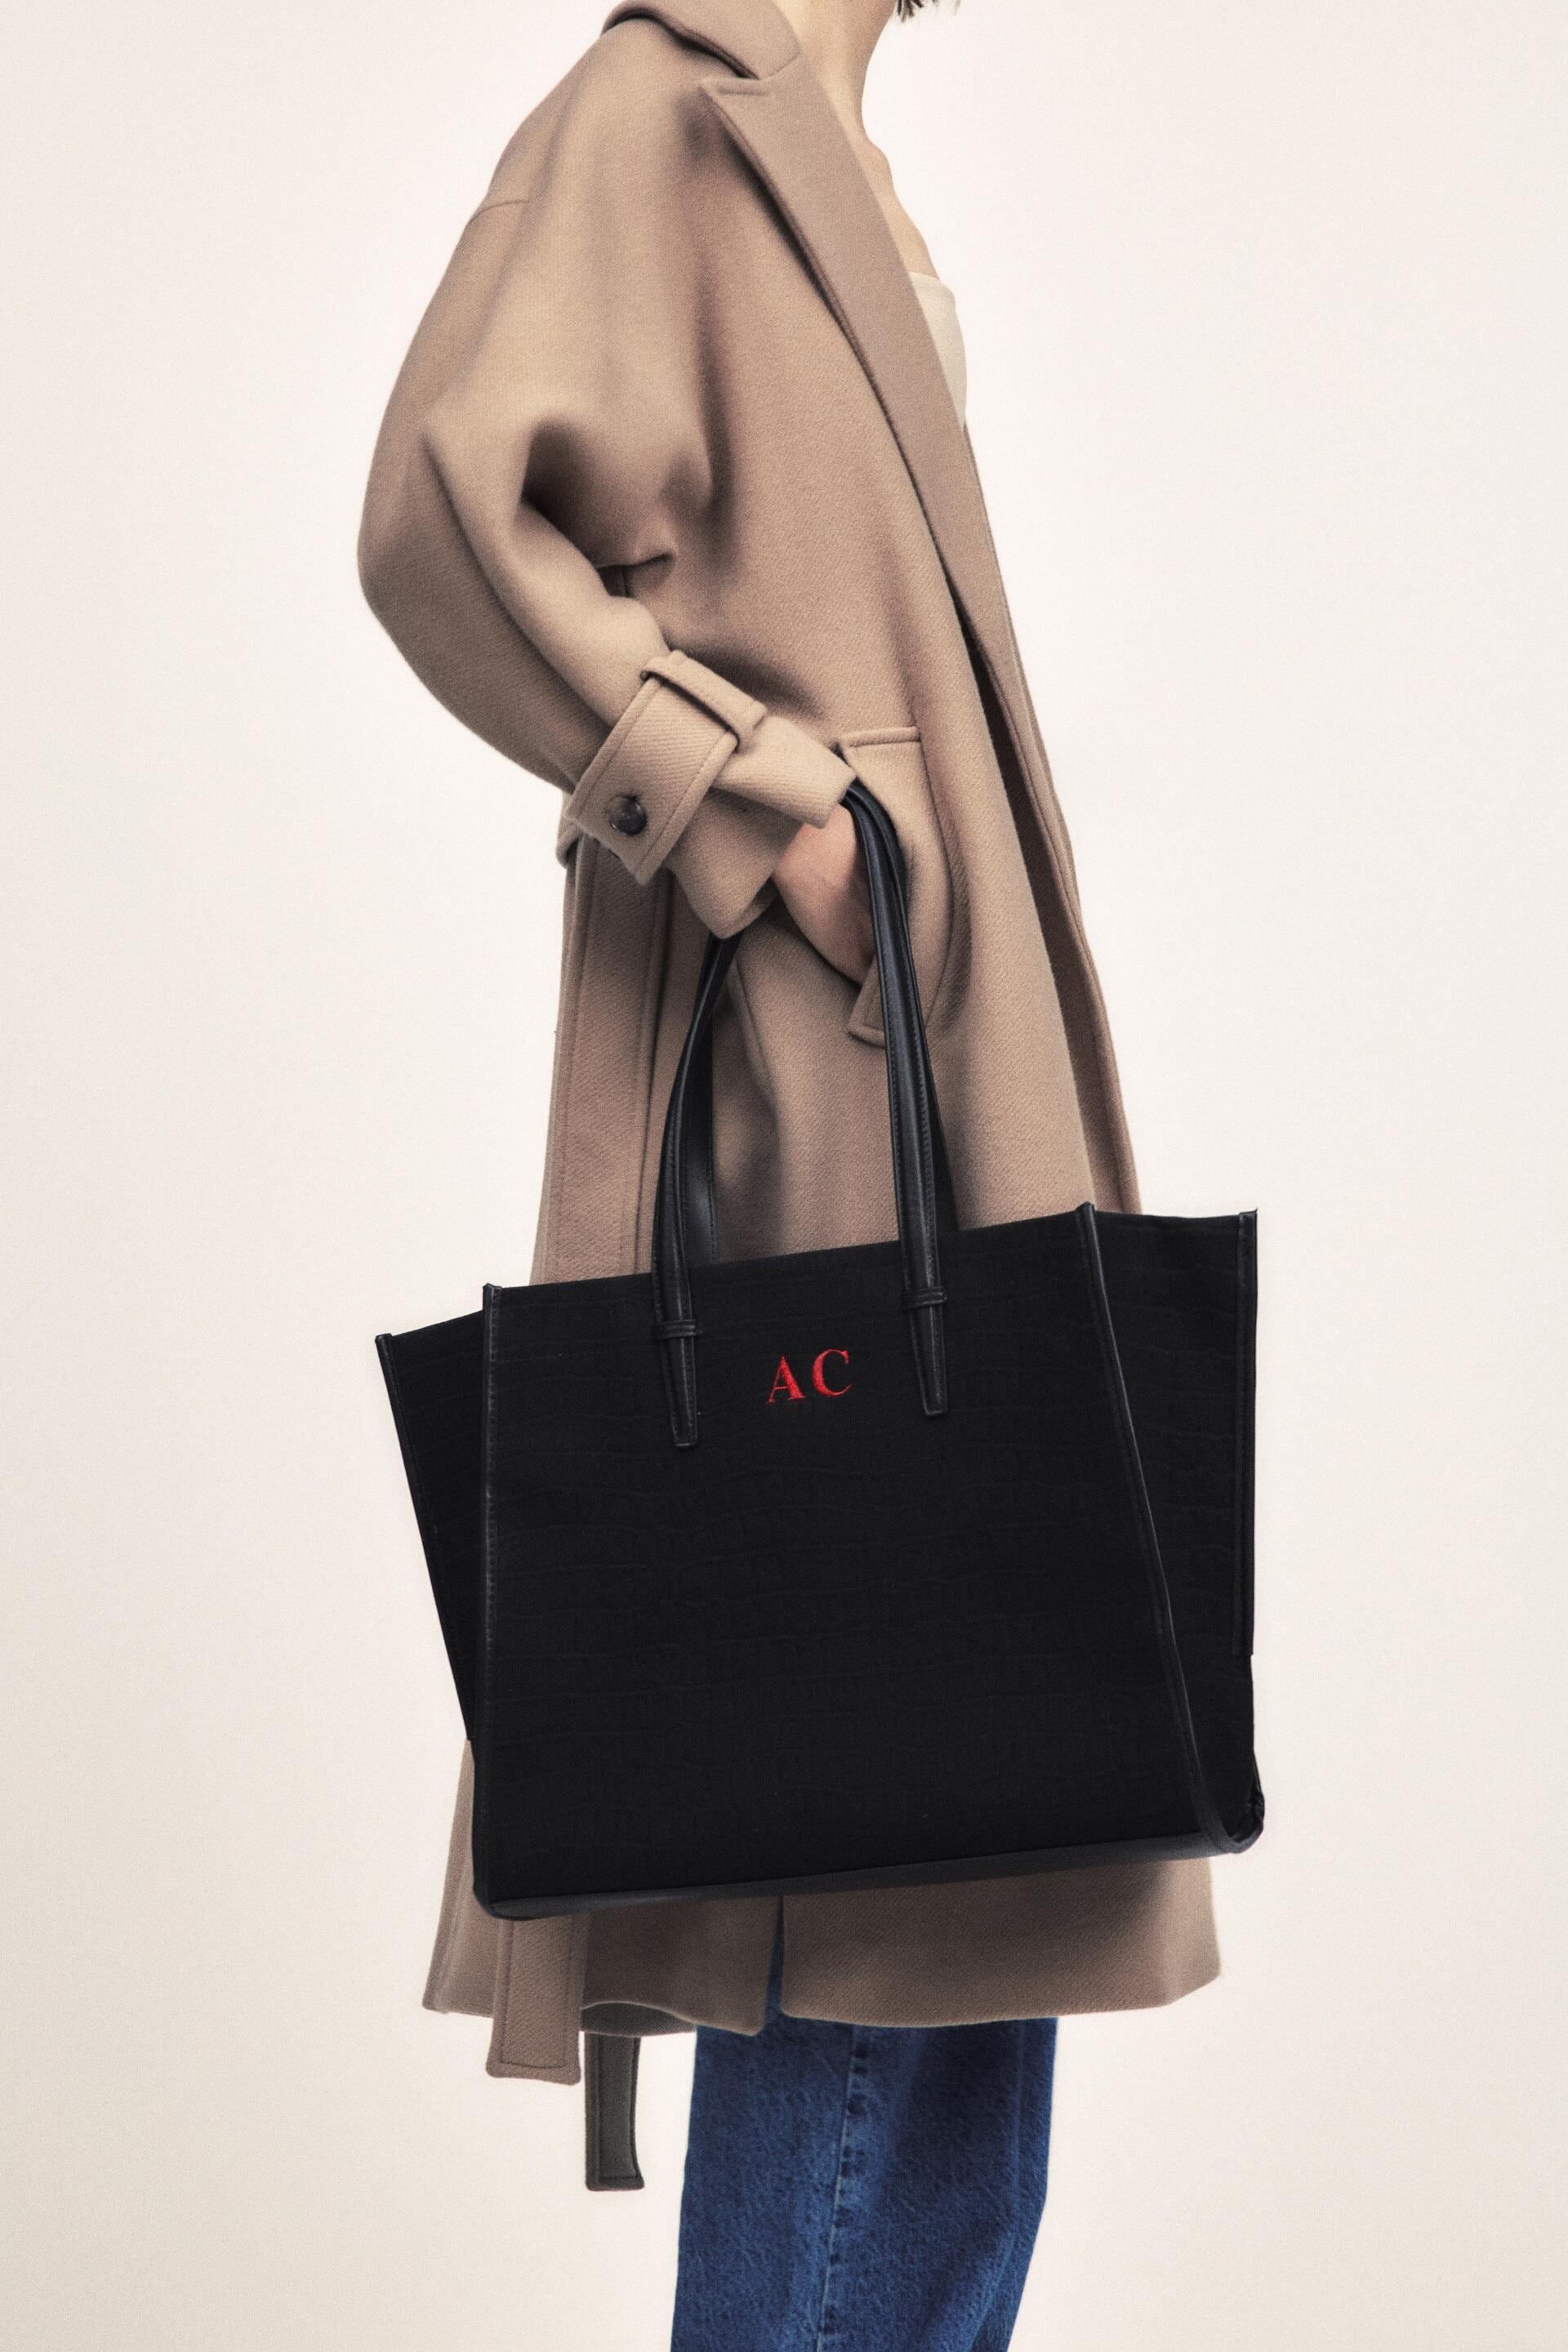 Dispuesto canto agradable El bolso shopper clásico de Zara personalizable con iniciales